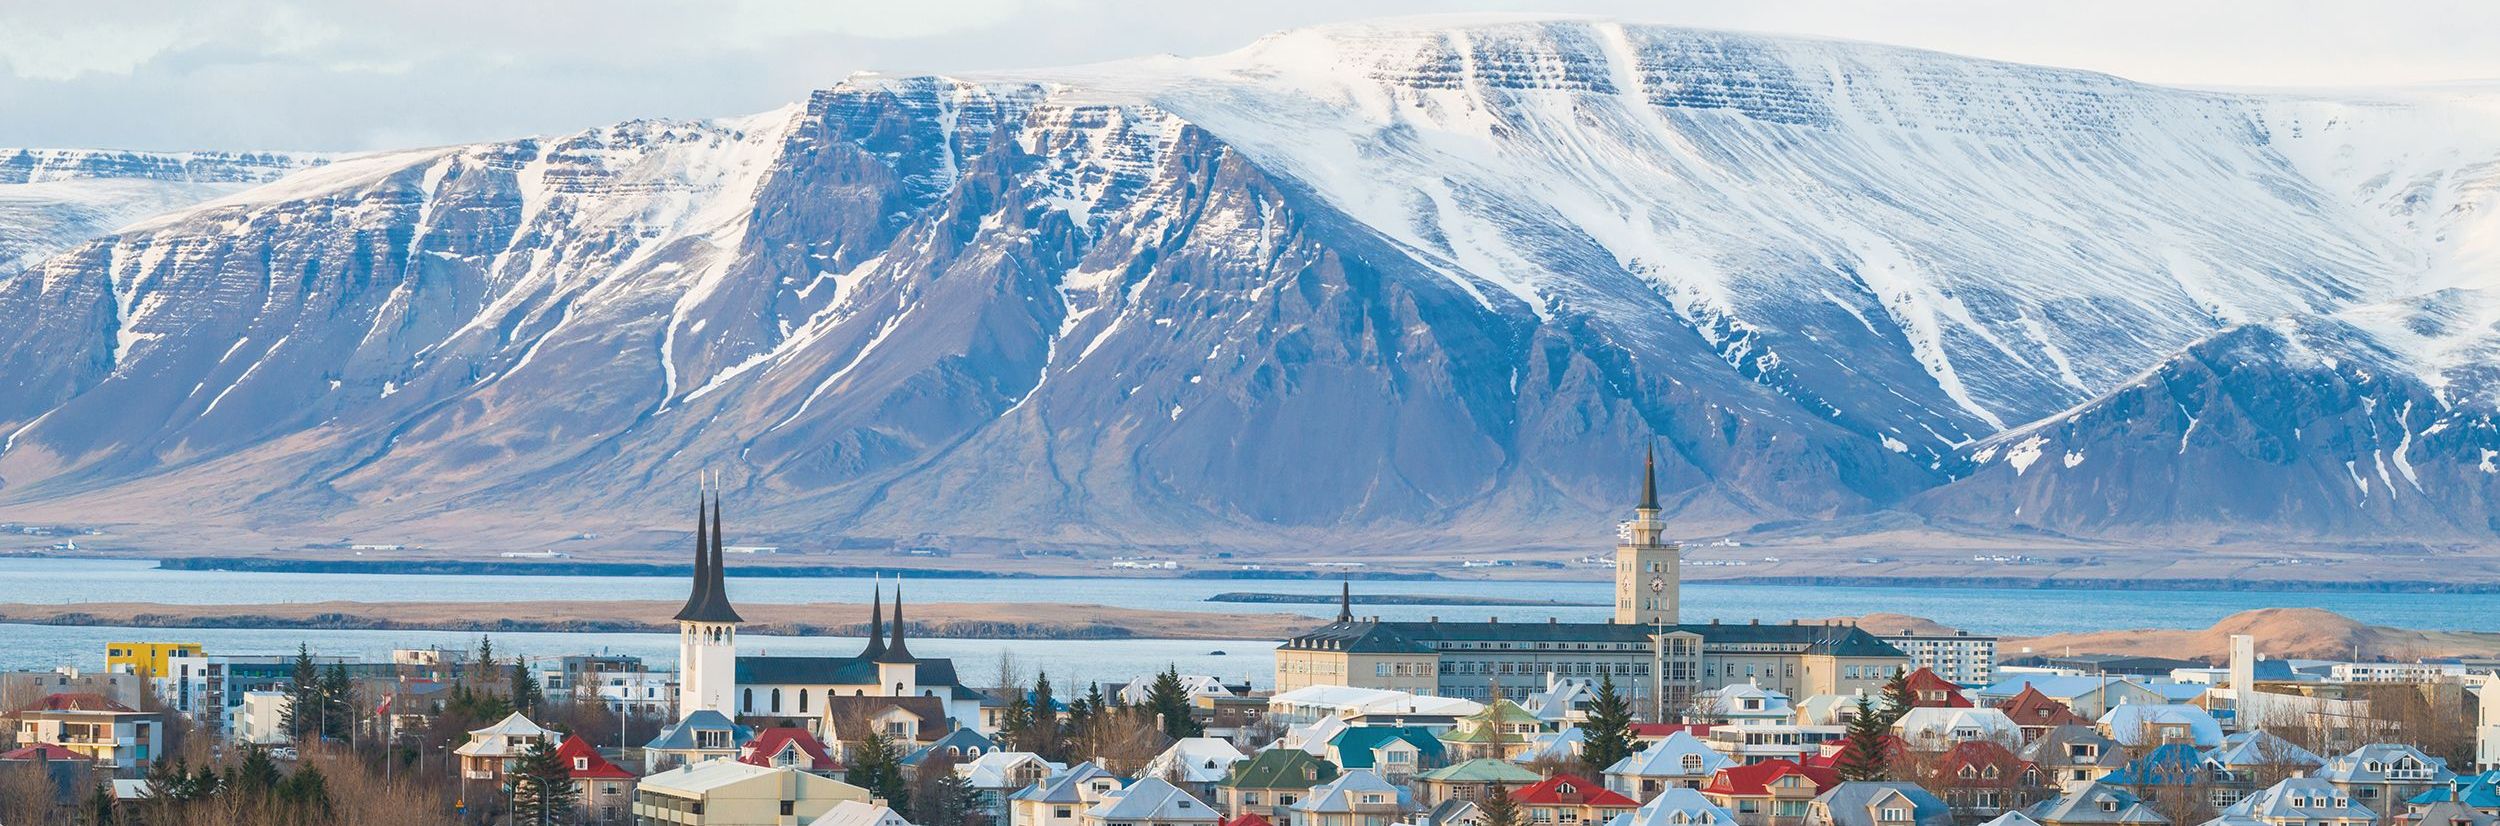 Island Familienreise - Aussicht Reykjavic